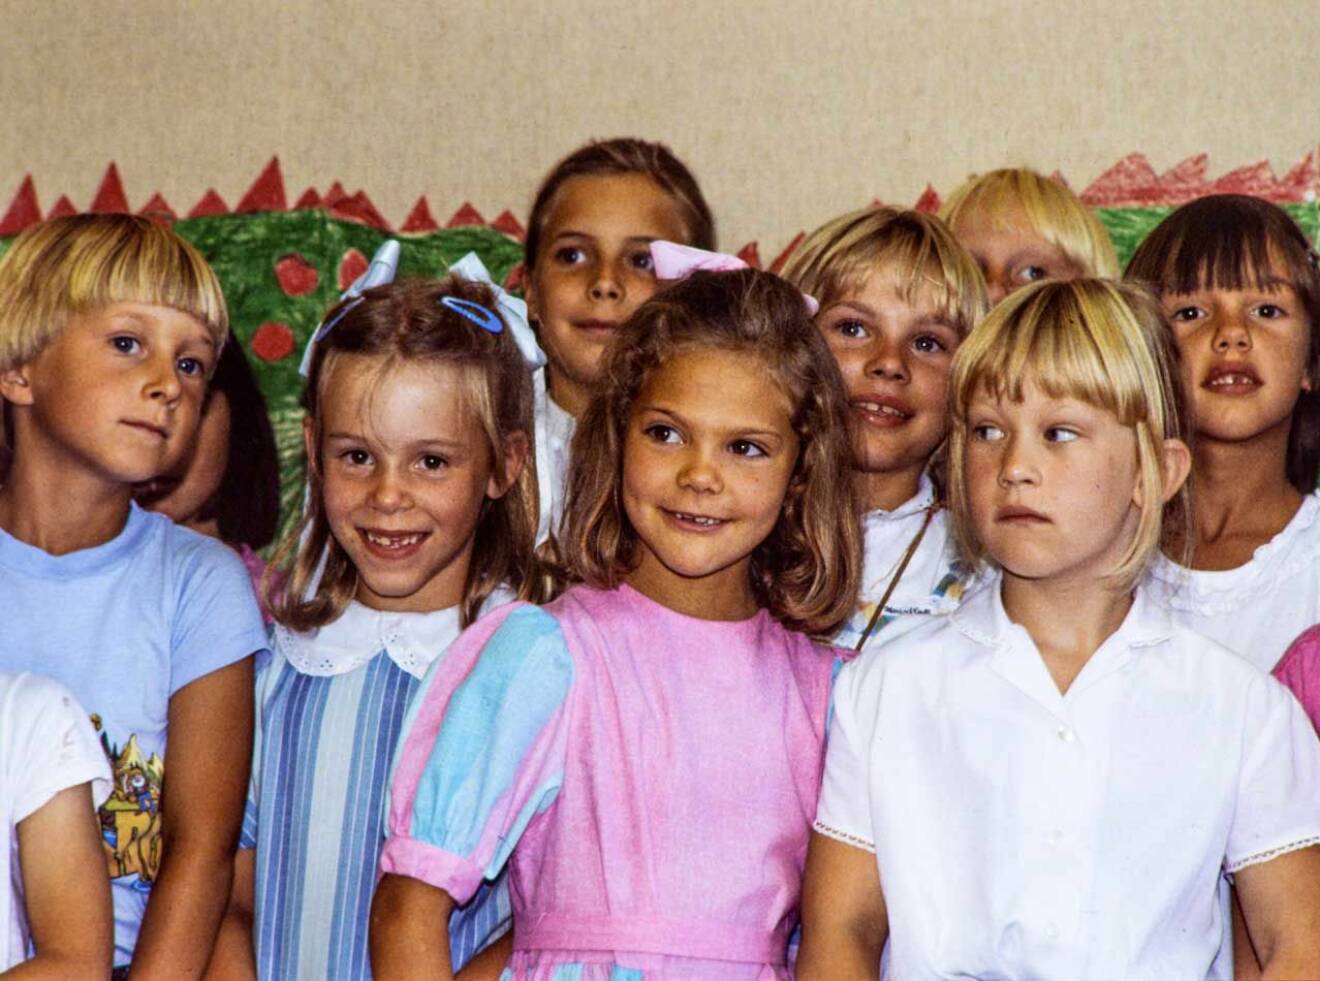 Kronprinsessan Victorias första skoldag i Smedsslättskolan. Det är den 21 augusti 1984 och fröken heter Ulla-Britta Wahlberg.